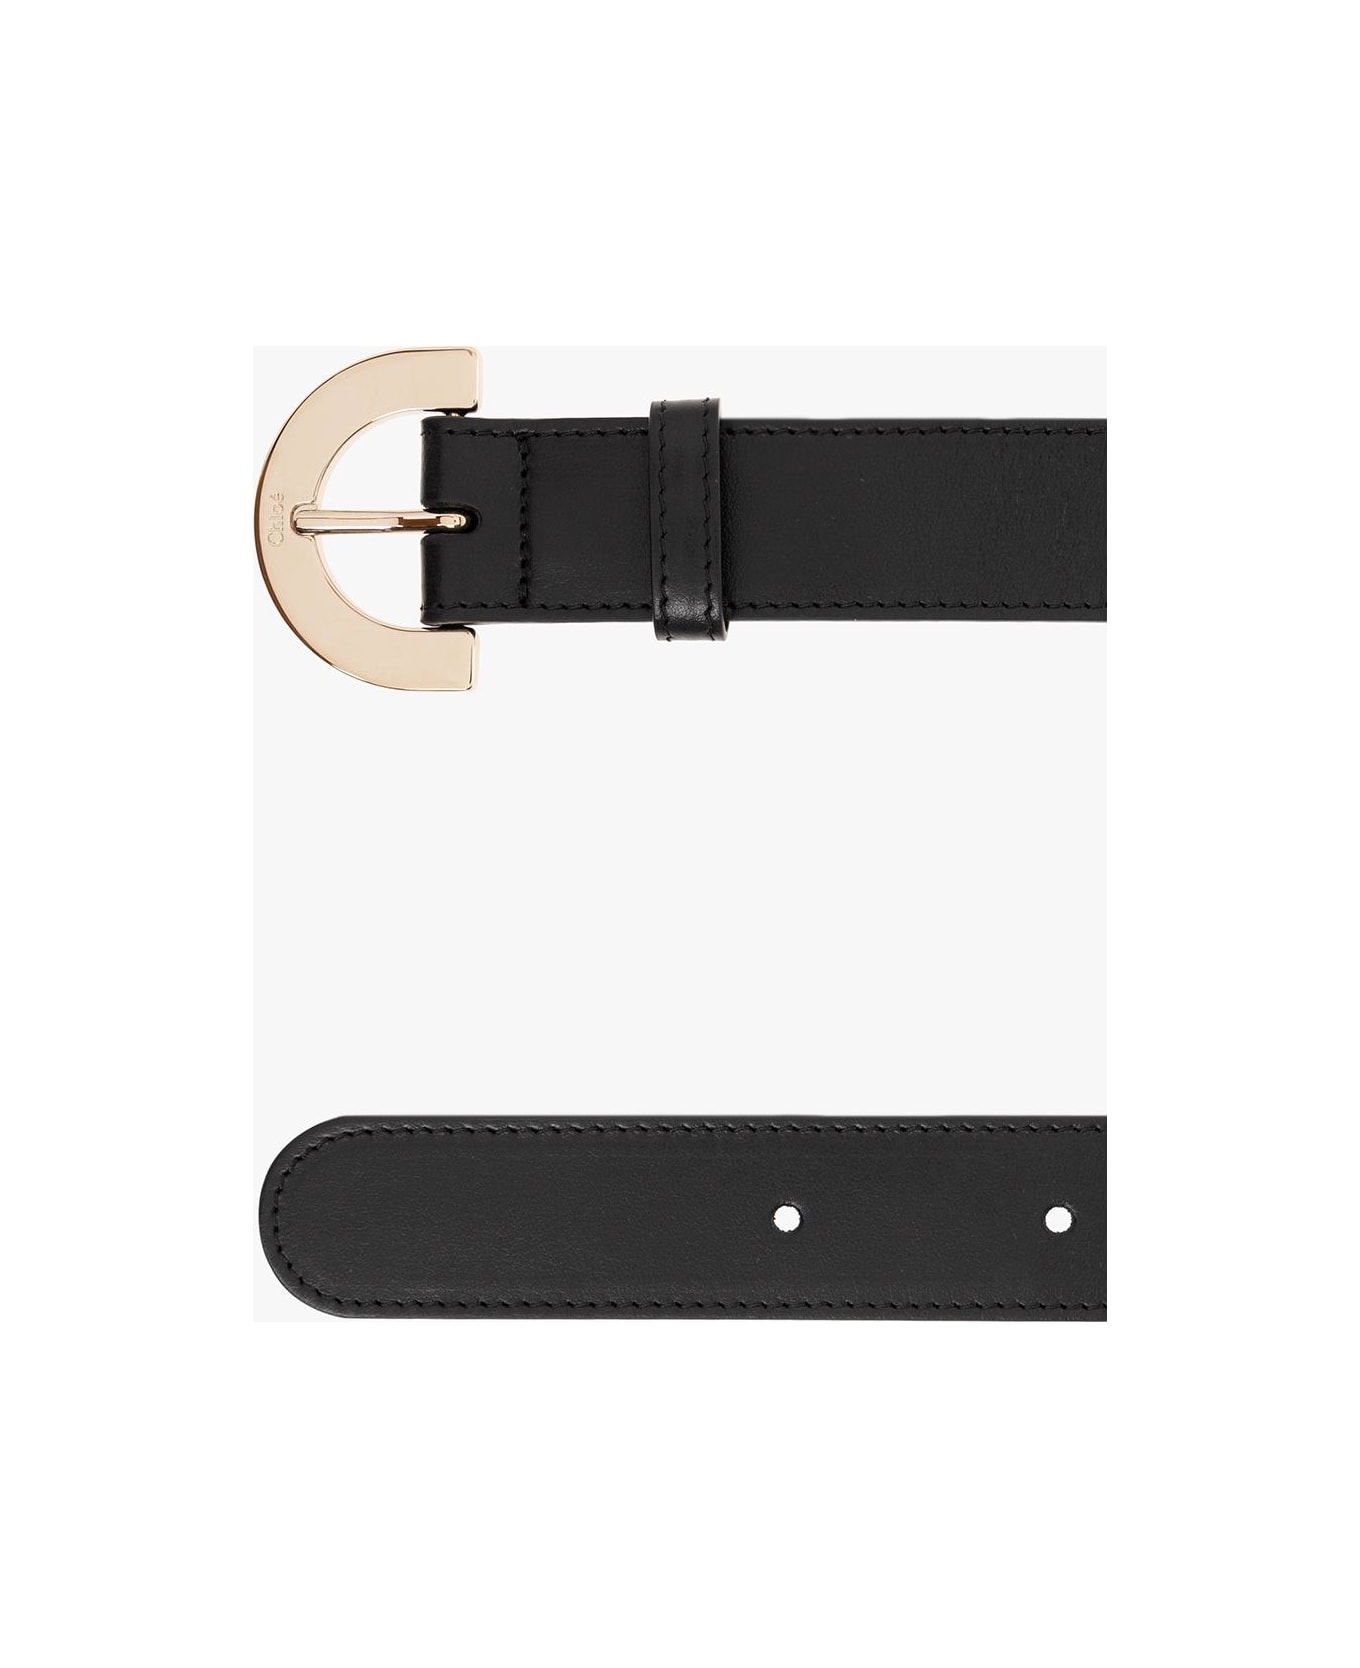 Chloé Leather Belt - NERO ベルト